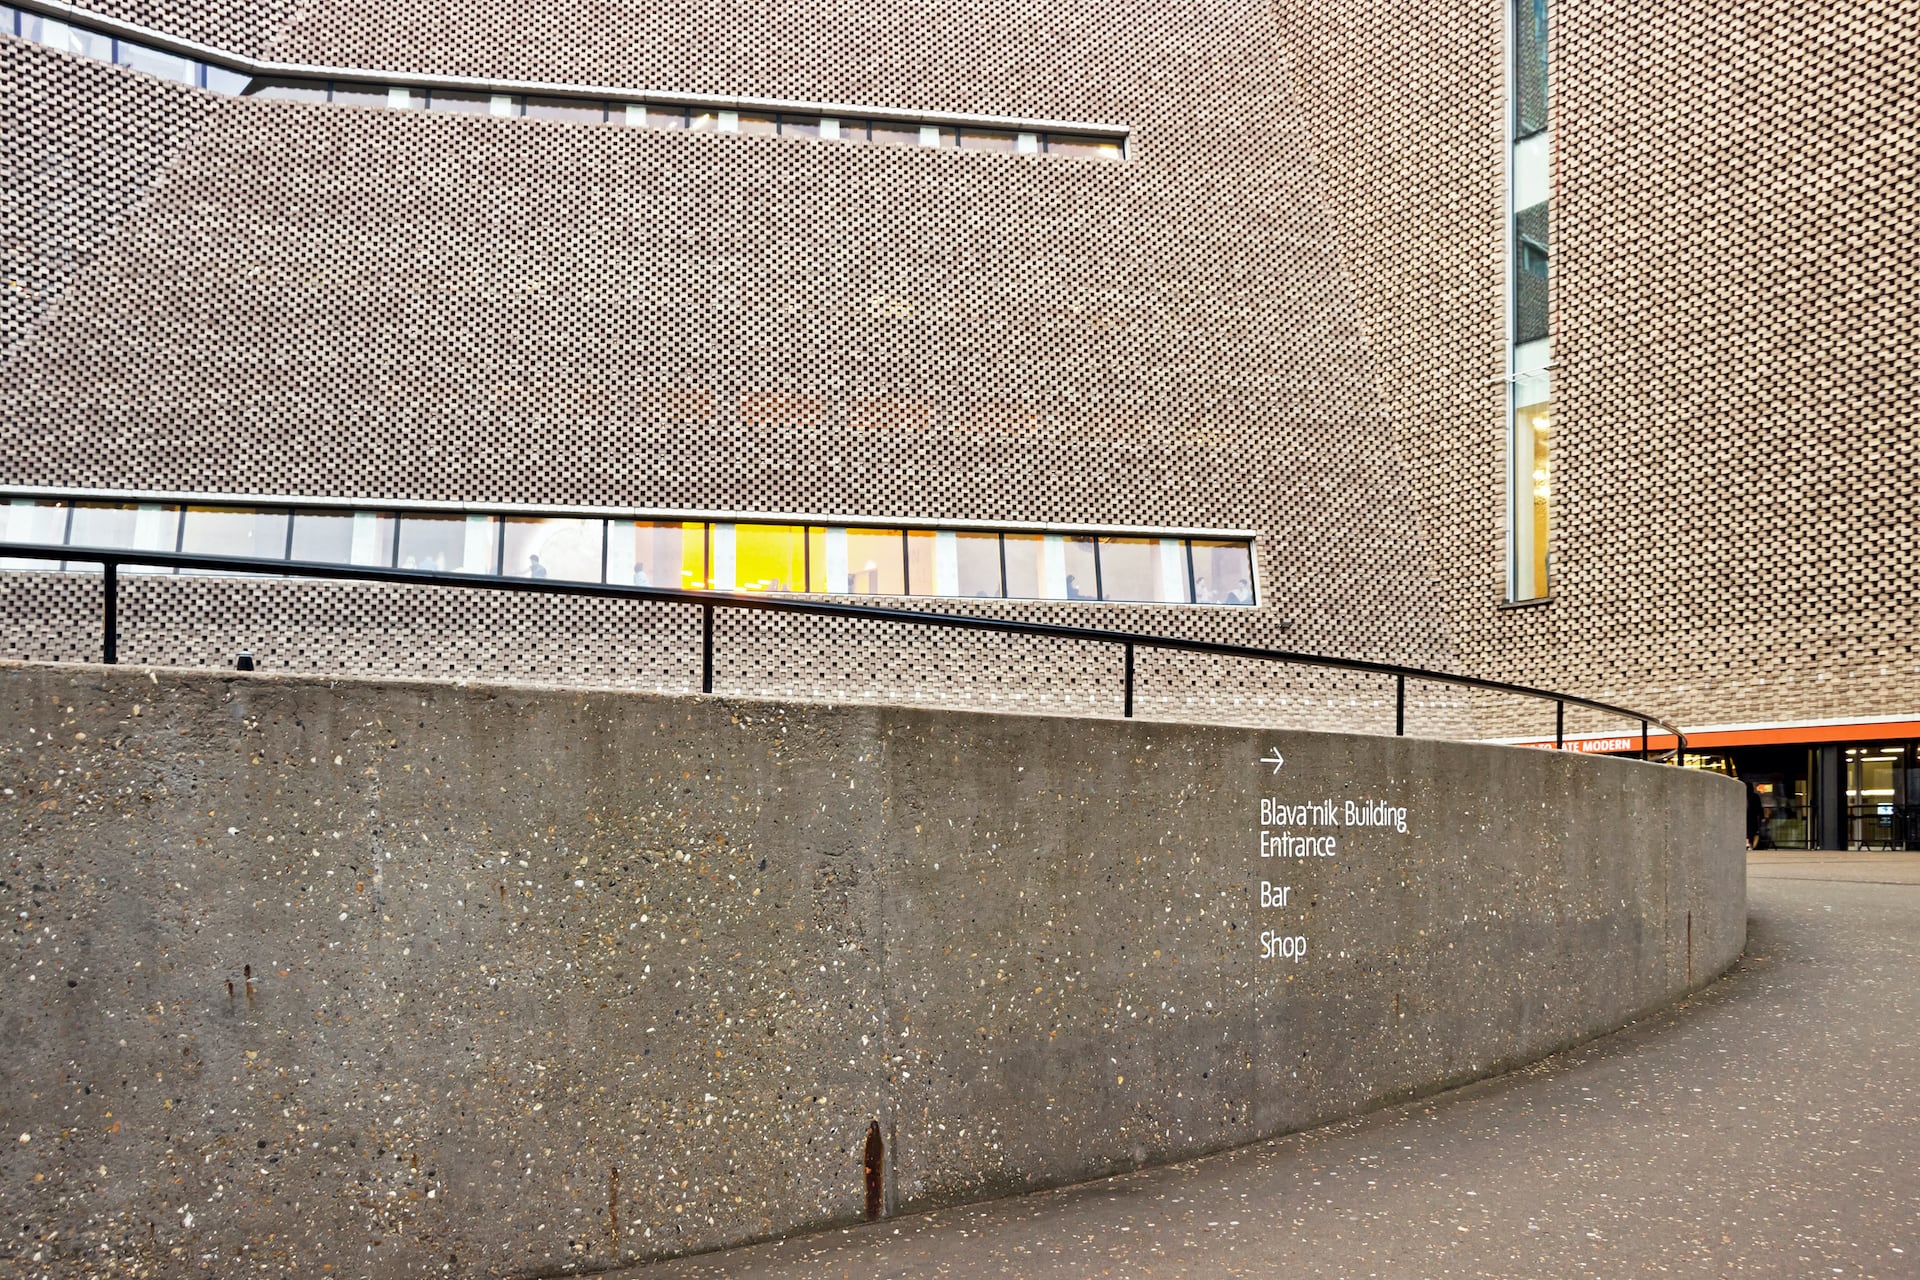 Die Tate Modern Gallery in london fällt bereits von außen durch ihr Gebäude auf